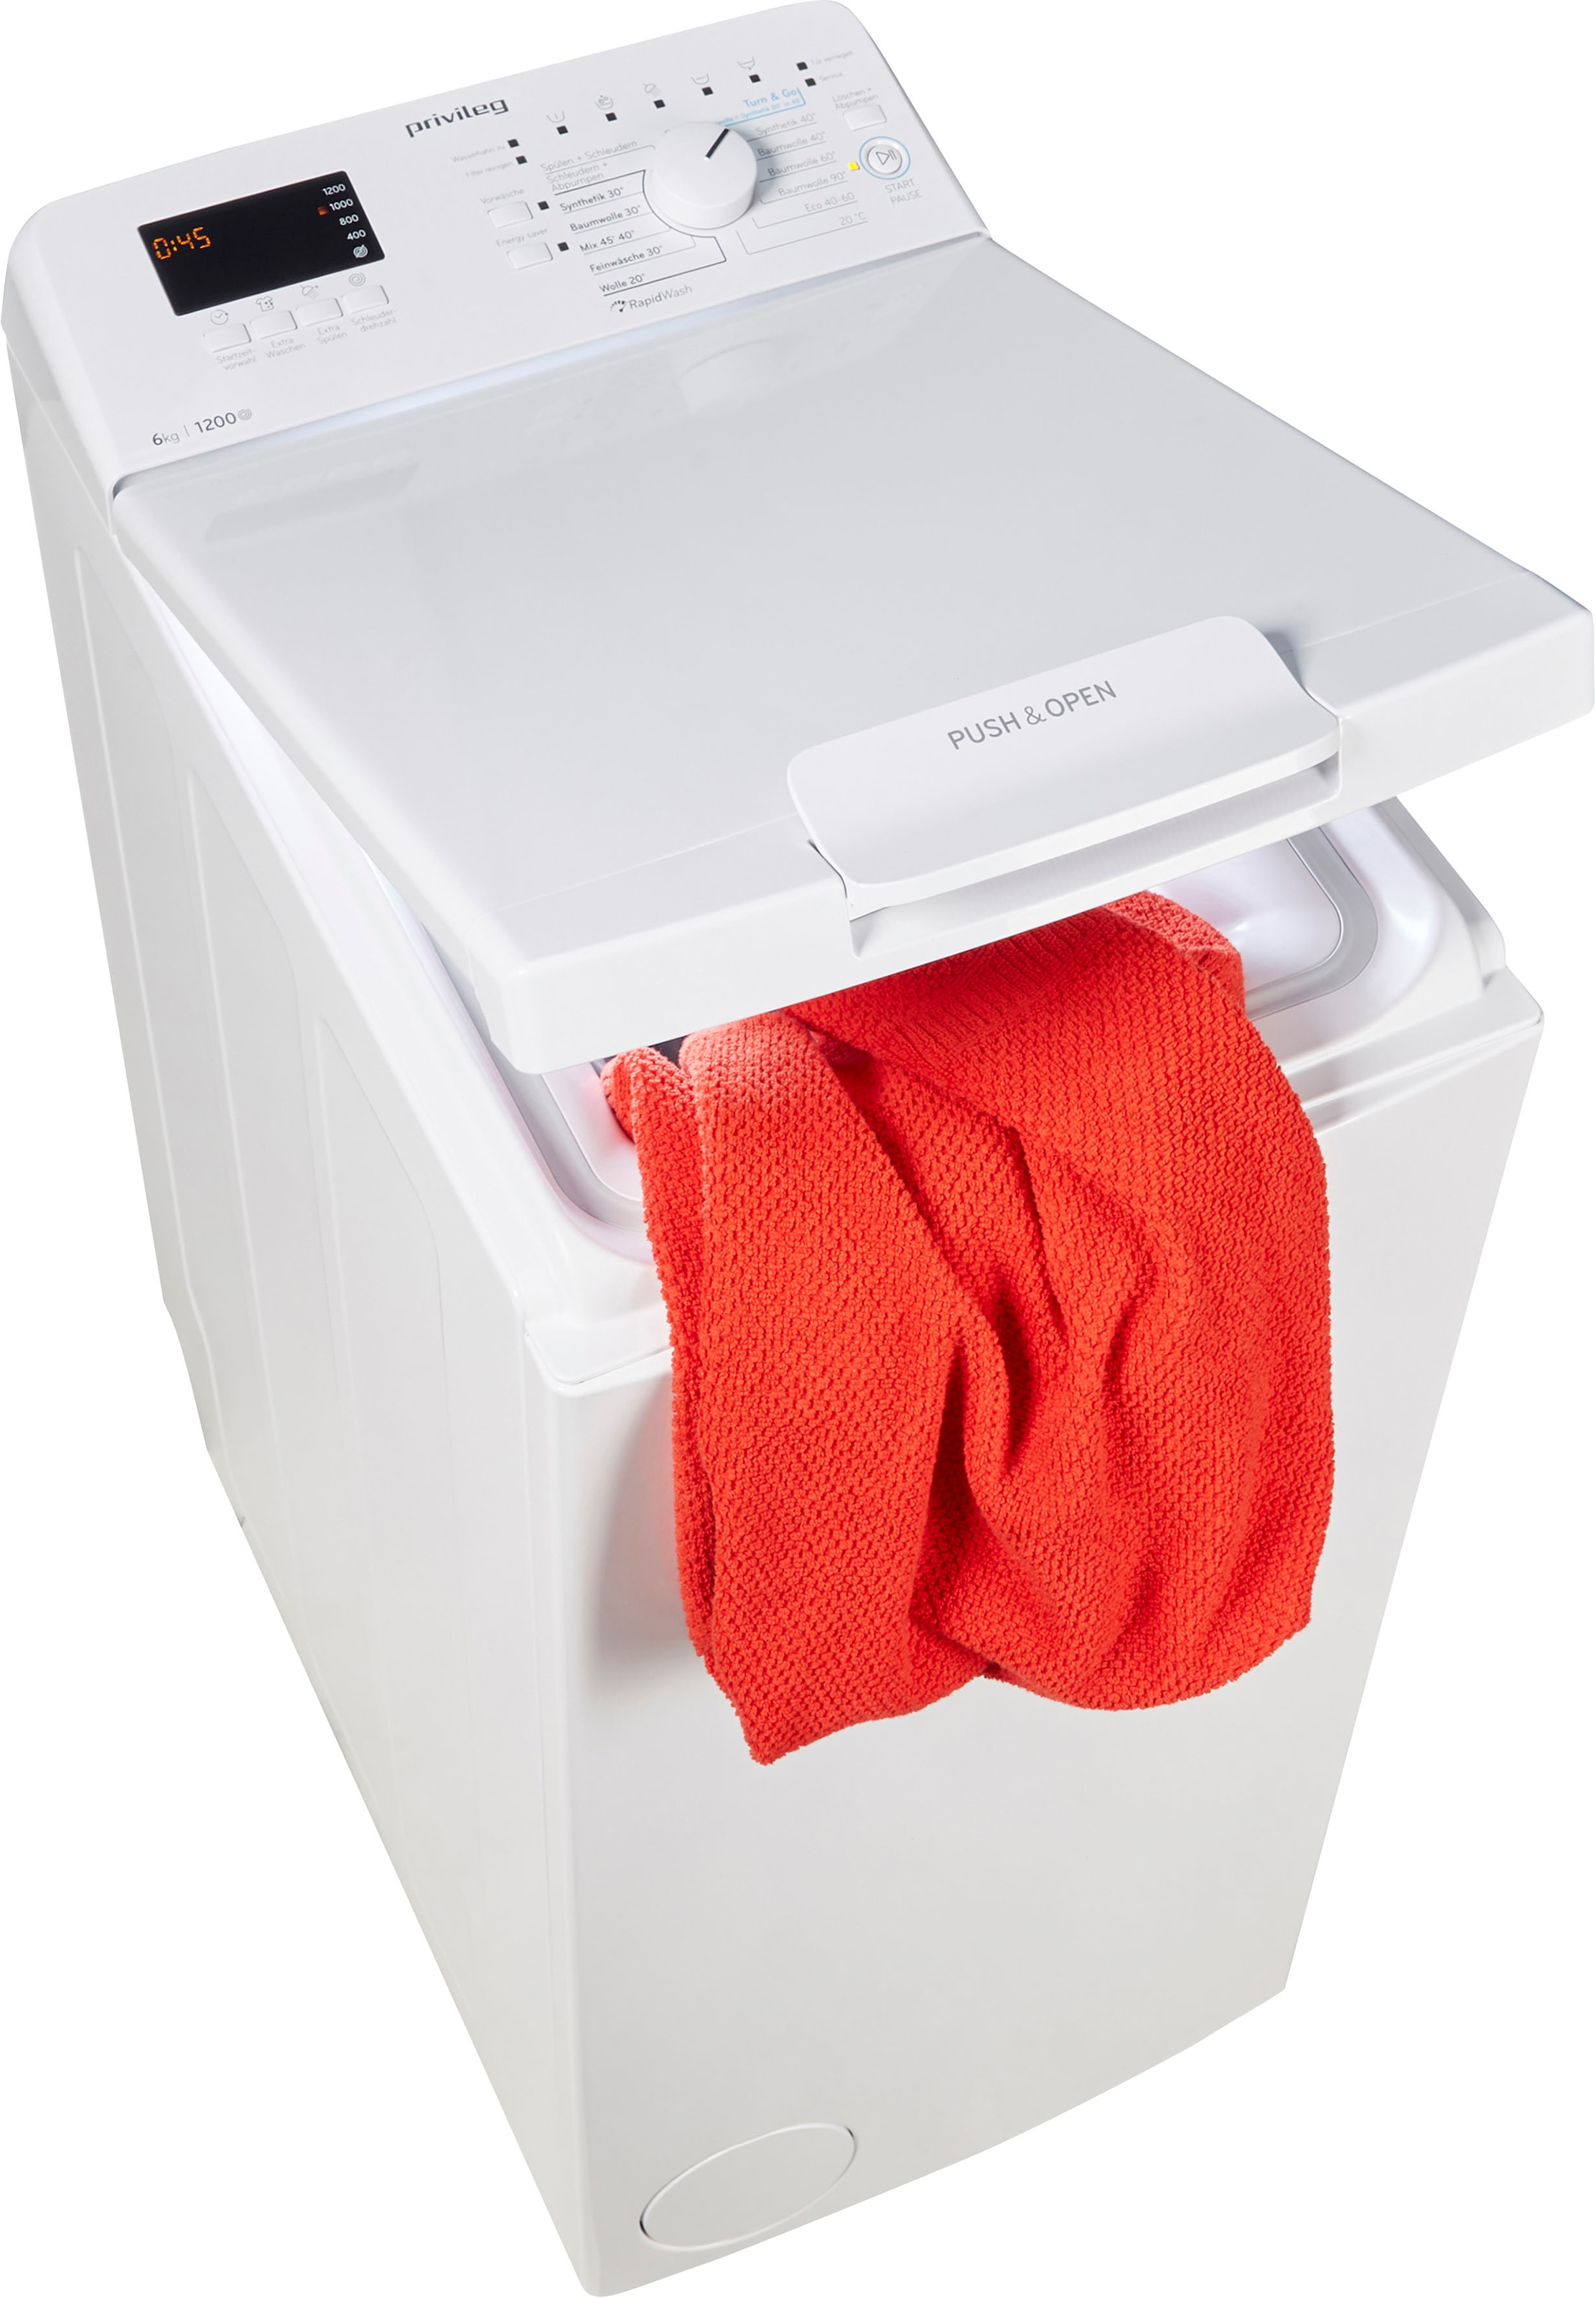 Privileg Waschmaschine Toplader »PWT C623 6 N«, Monate C623 bestellen PWT online Herstellergarantie U/min, kg, 50 N, 1200